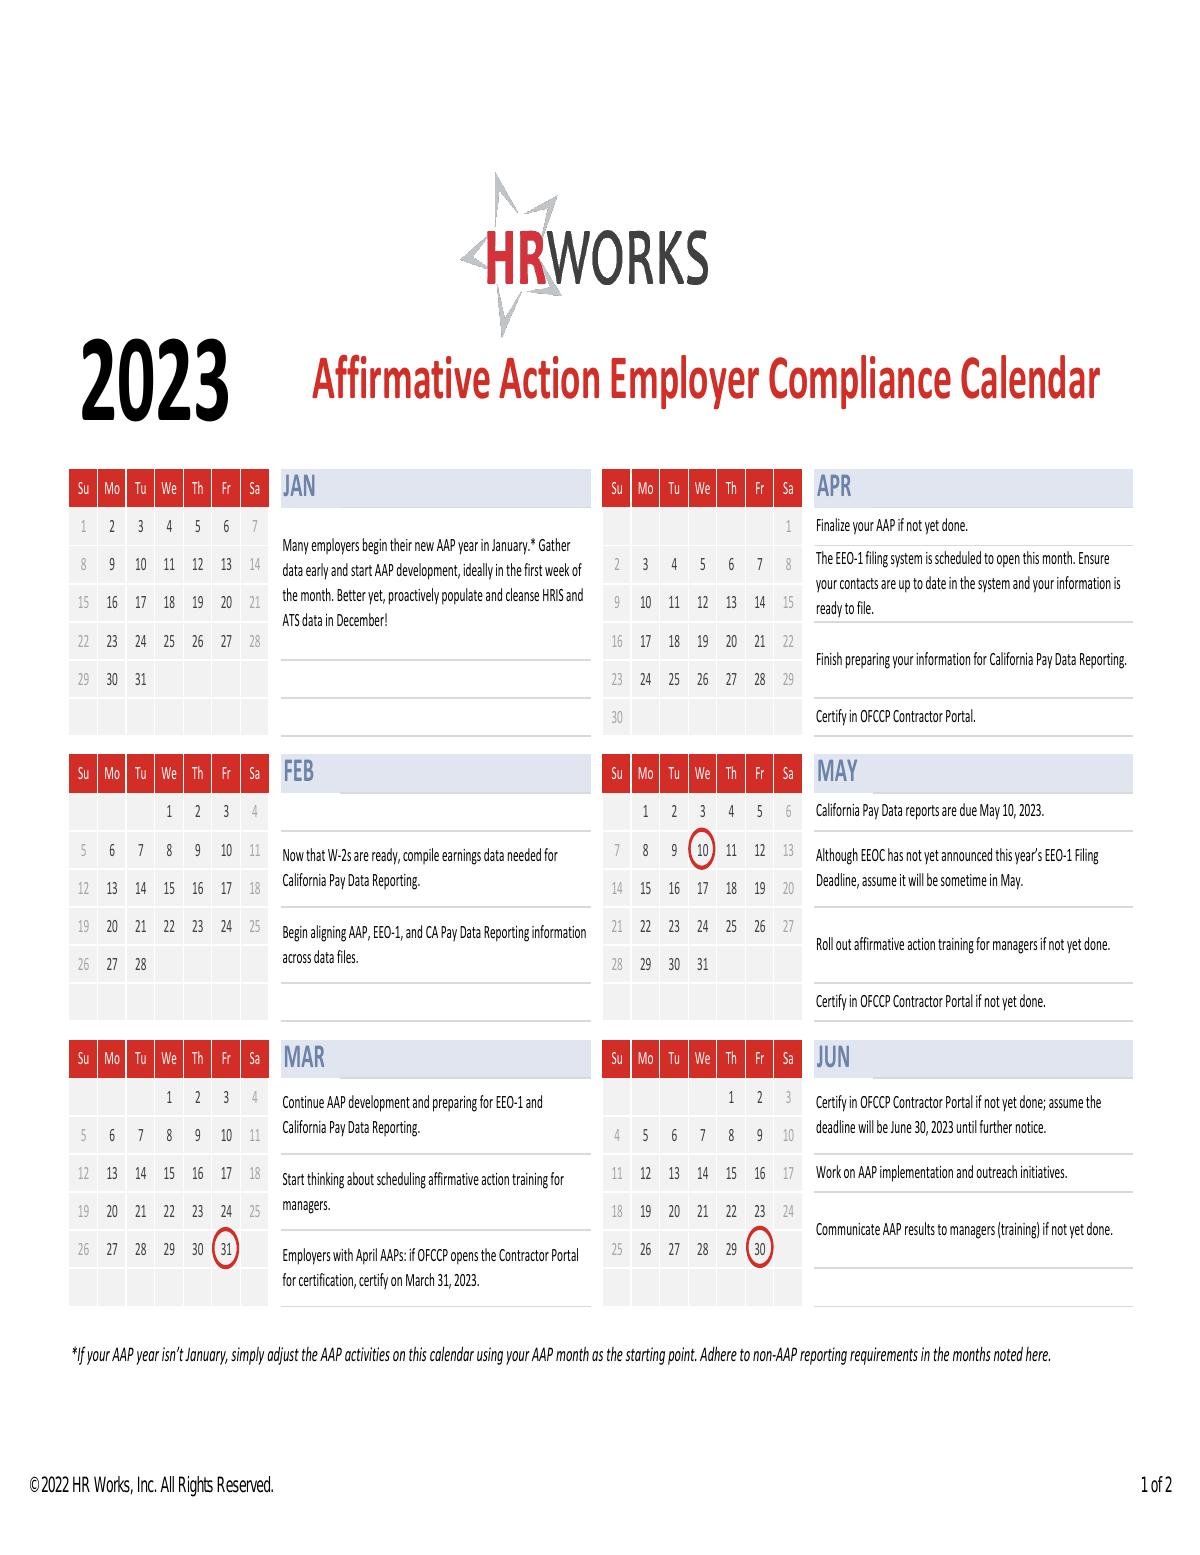 Affirmative Action Employer Compliance Calendar